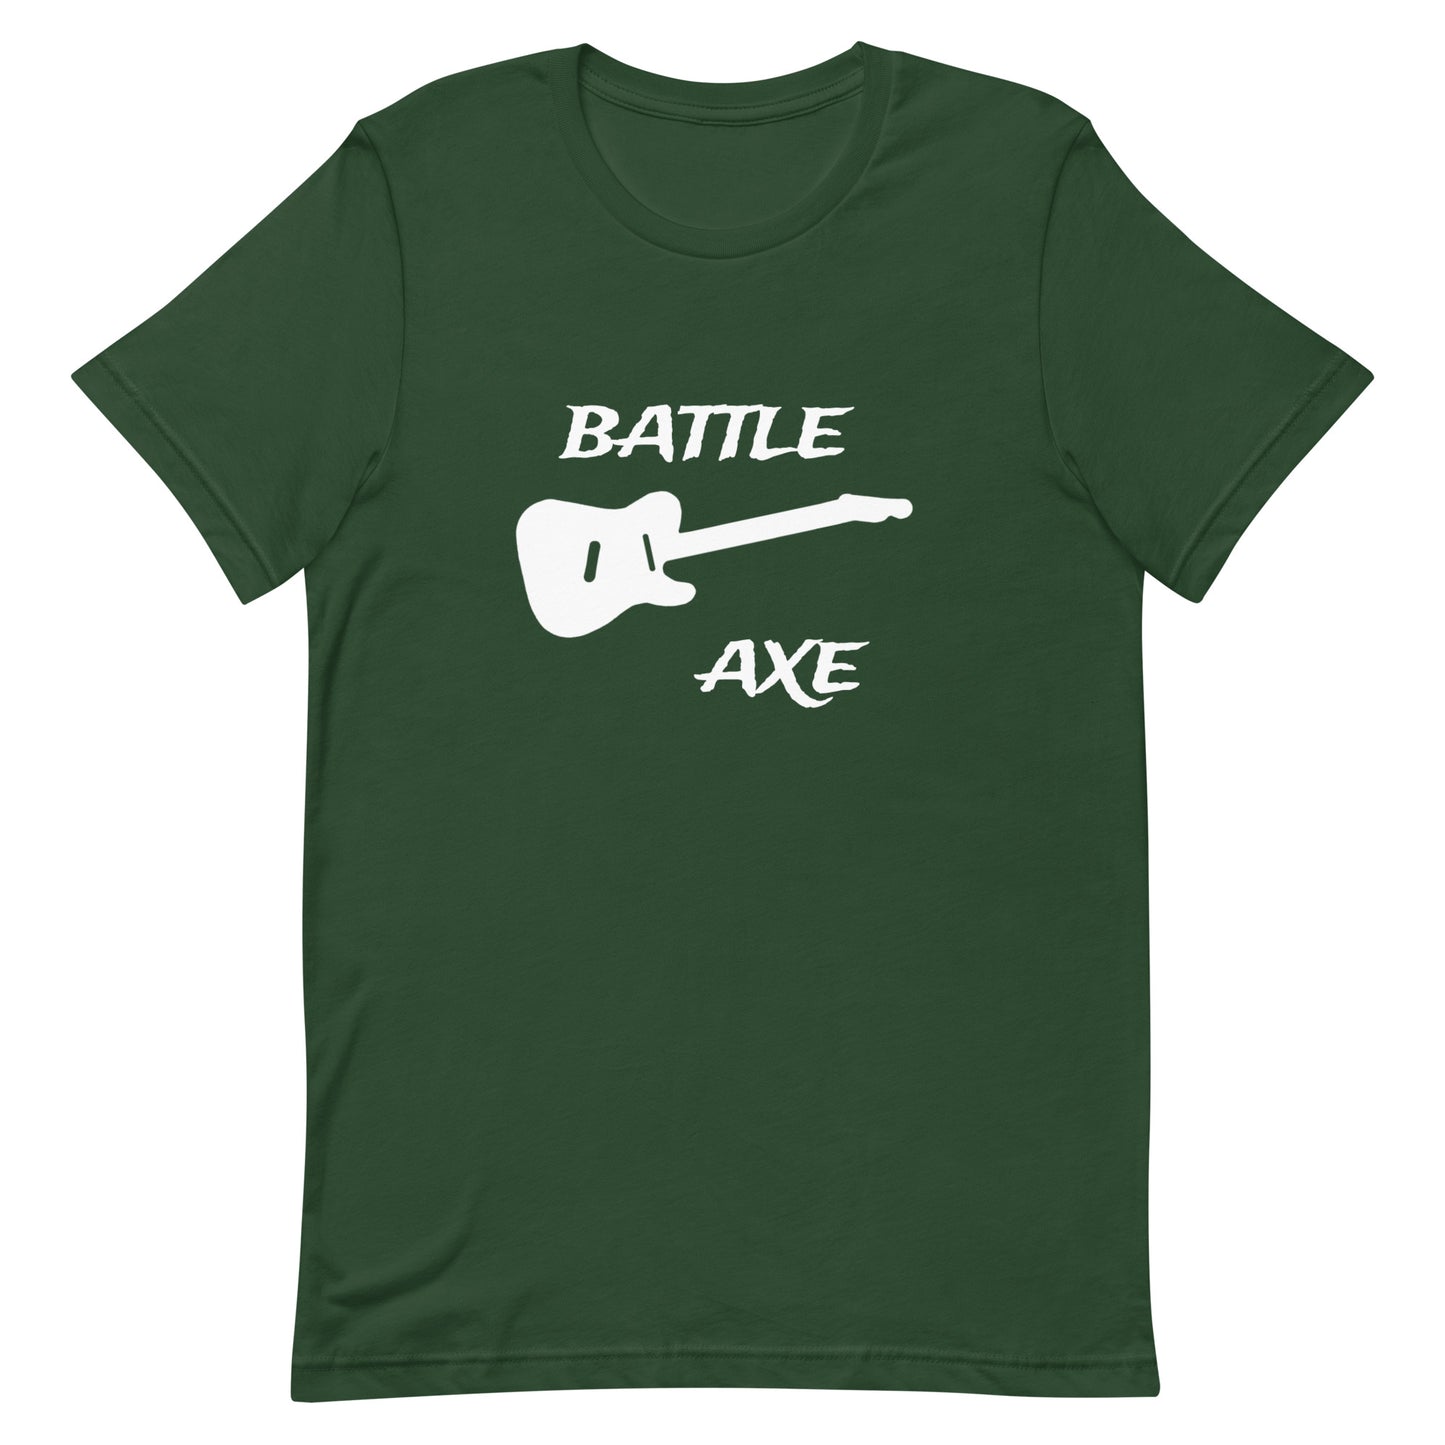 Battleaxe 4